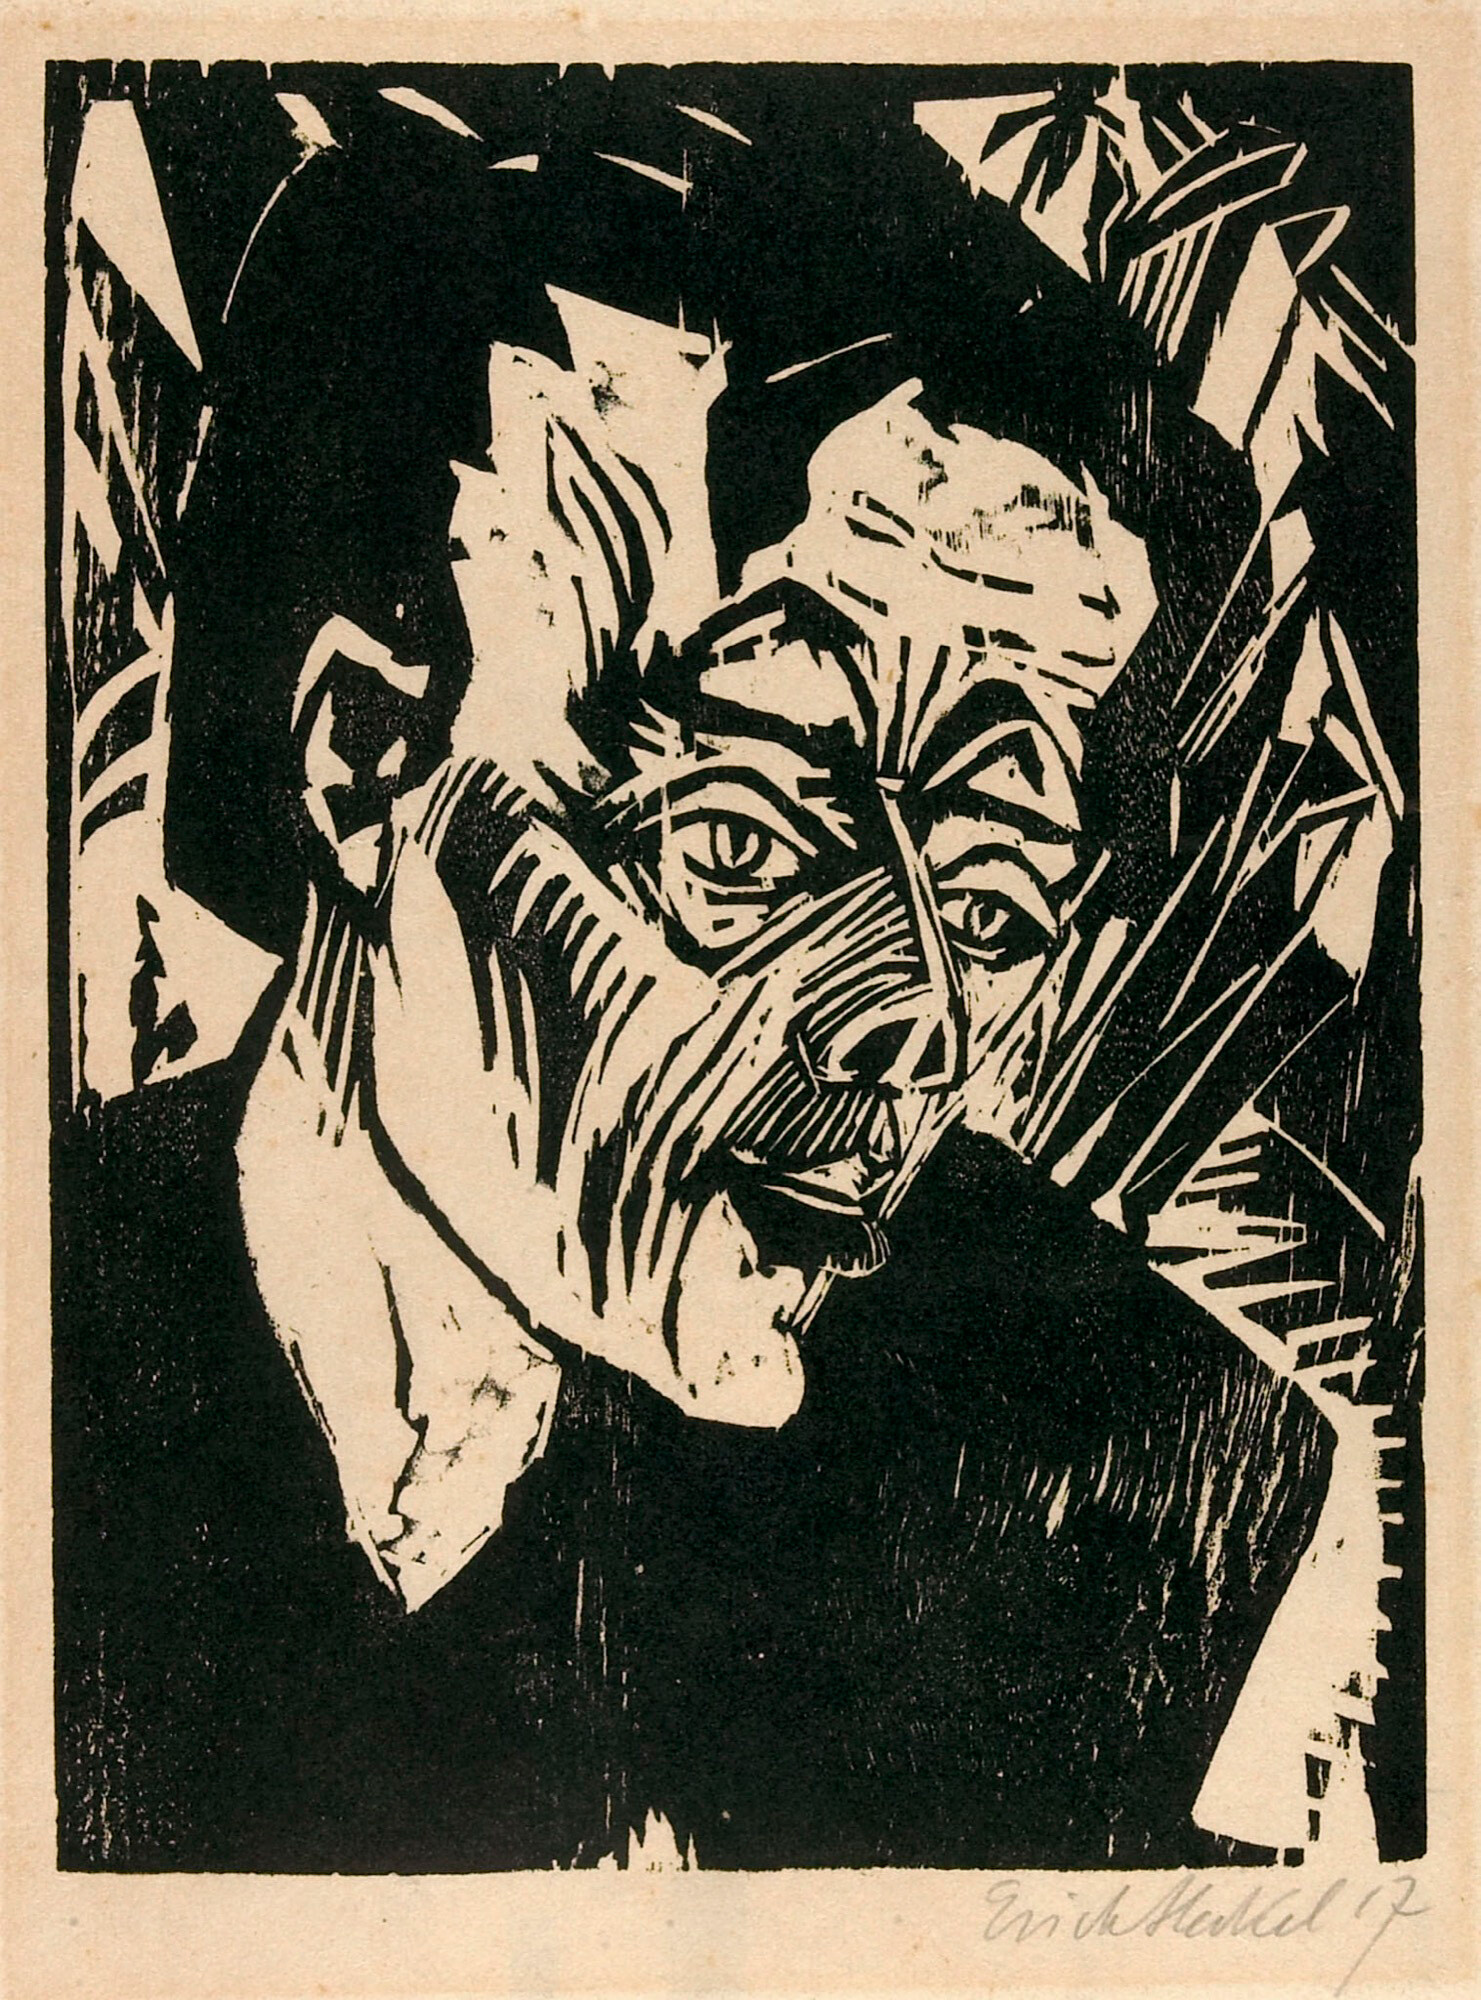 La xilografia Roquairol (1917) di Erich Heckel fonte di ispirazione per la copertina di 'Heroes' oggi conservata al Metropolitan Museum of Art di New York